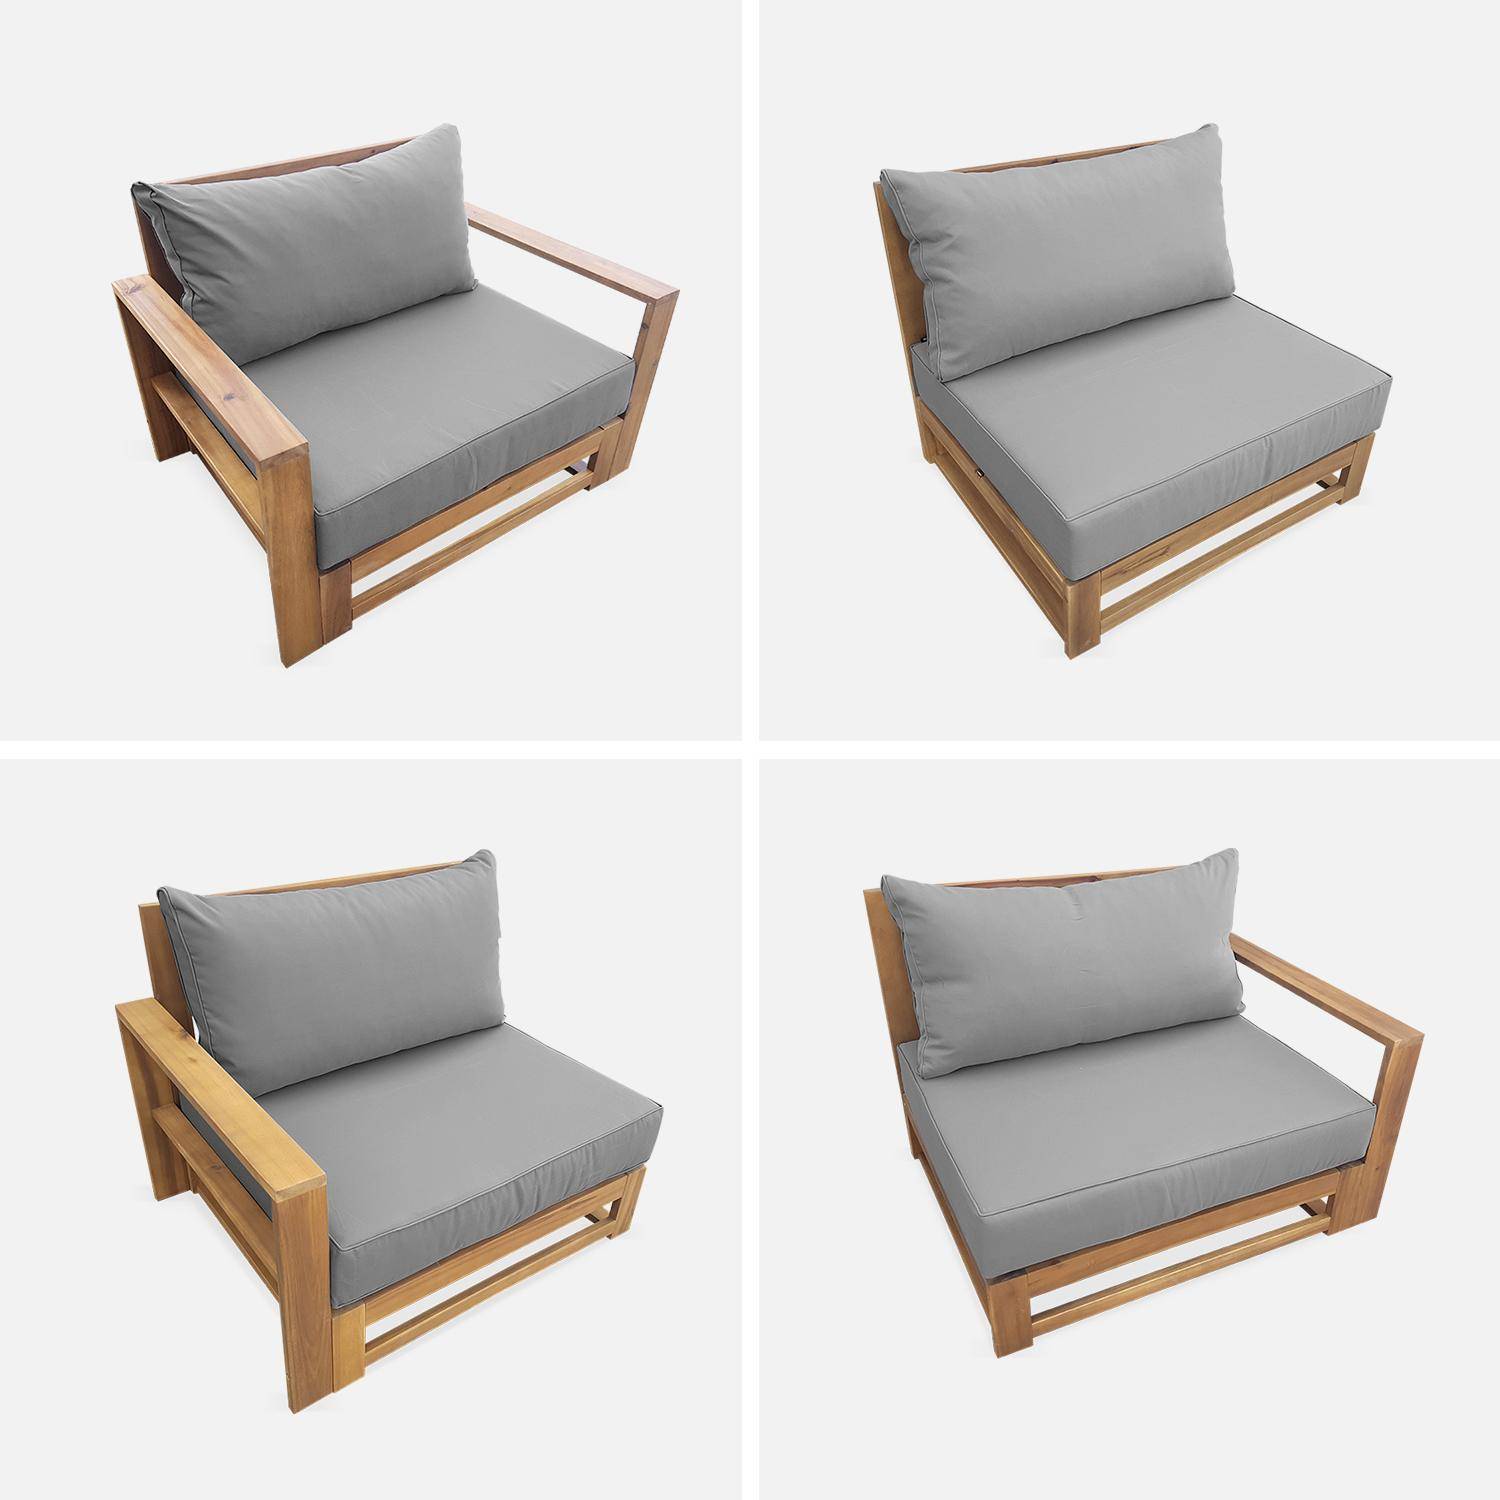 Salon de jardin en bois 5 places - Mendoza - Coussins gris, canapé, fauteuils et table basse en acacia, 6 éléments modulables, design Photo7